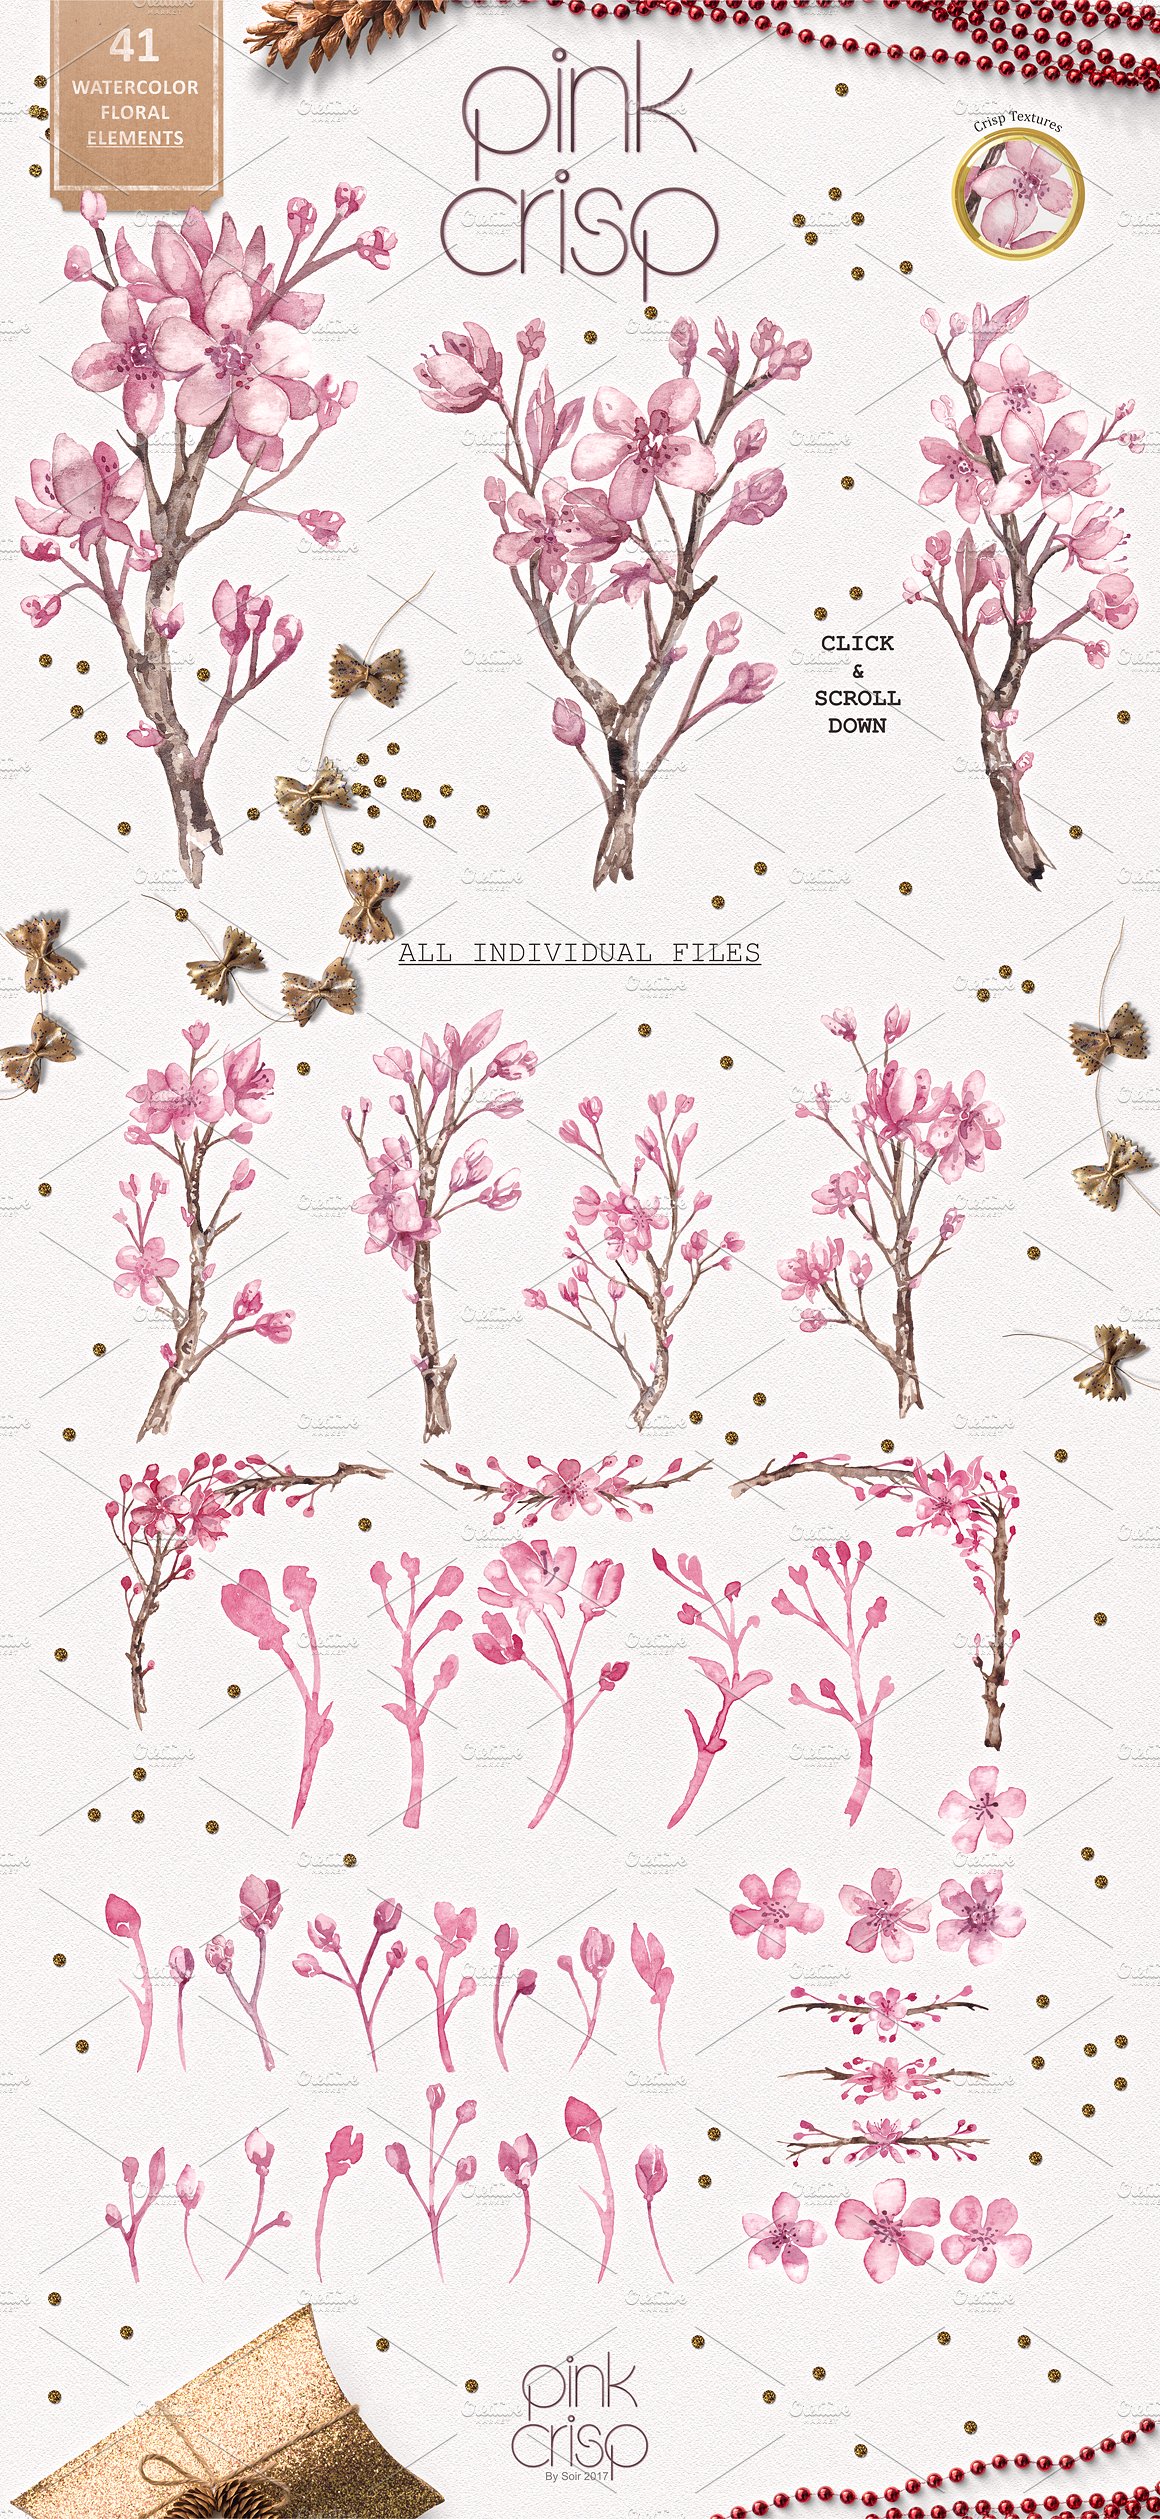 粉红色花卉集合 Pink Flower Collection插图3